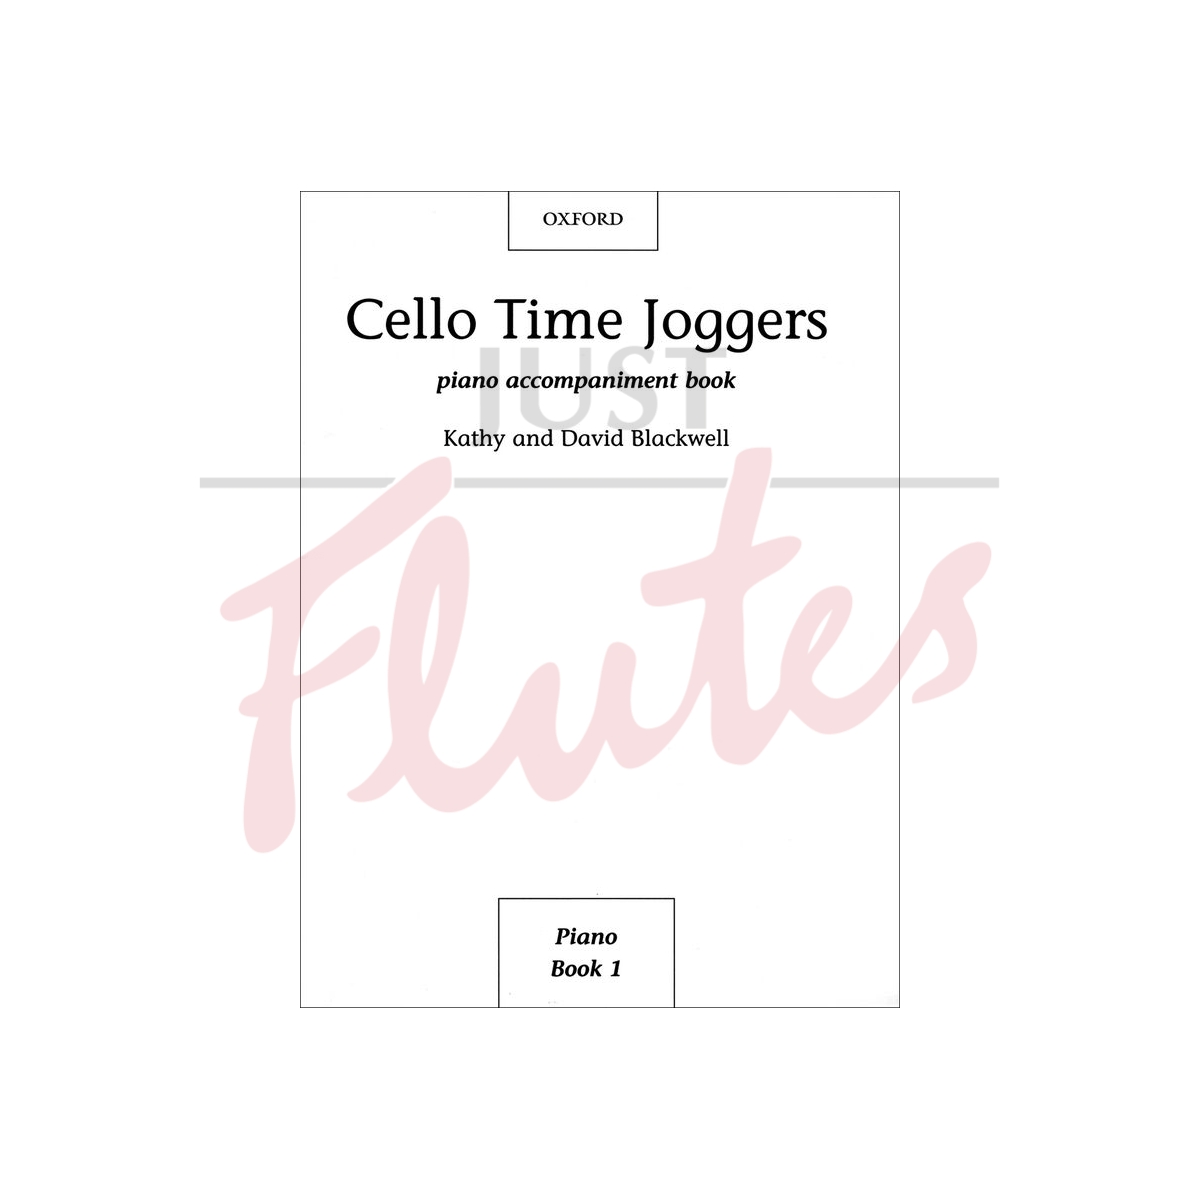 Cello Time Joggers [Piano Accompaniment Book]